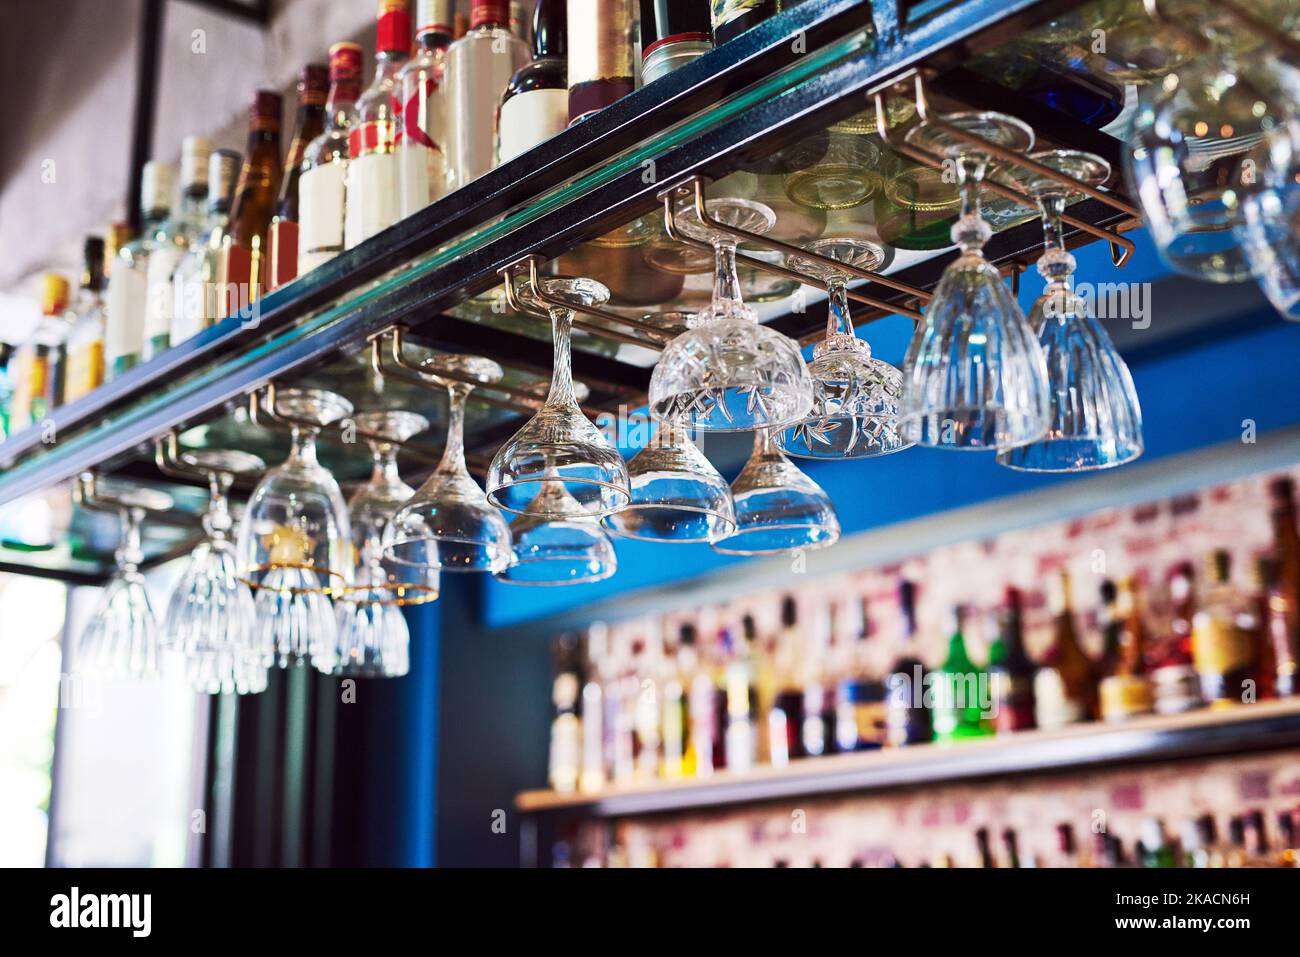 Eine makellose Bar mit vielen Flaschen und Gläsern ohne Menschen. Stockfoto